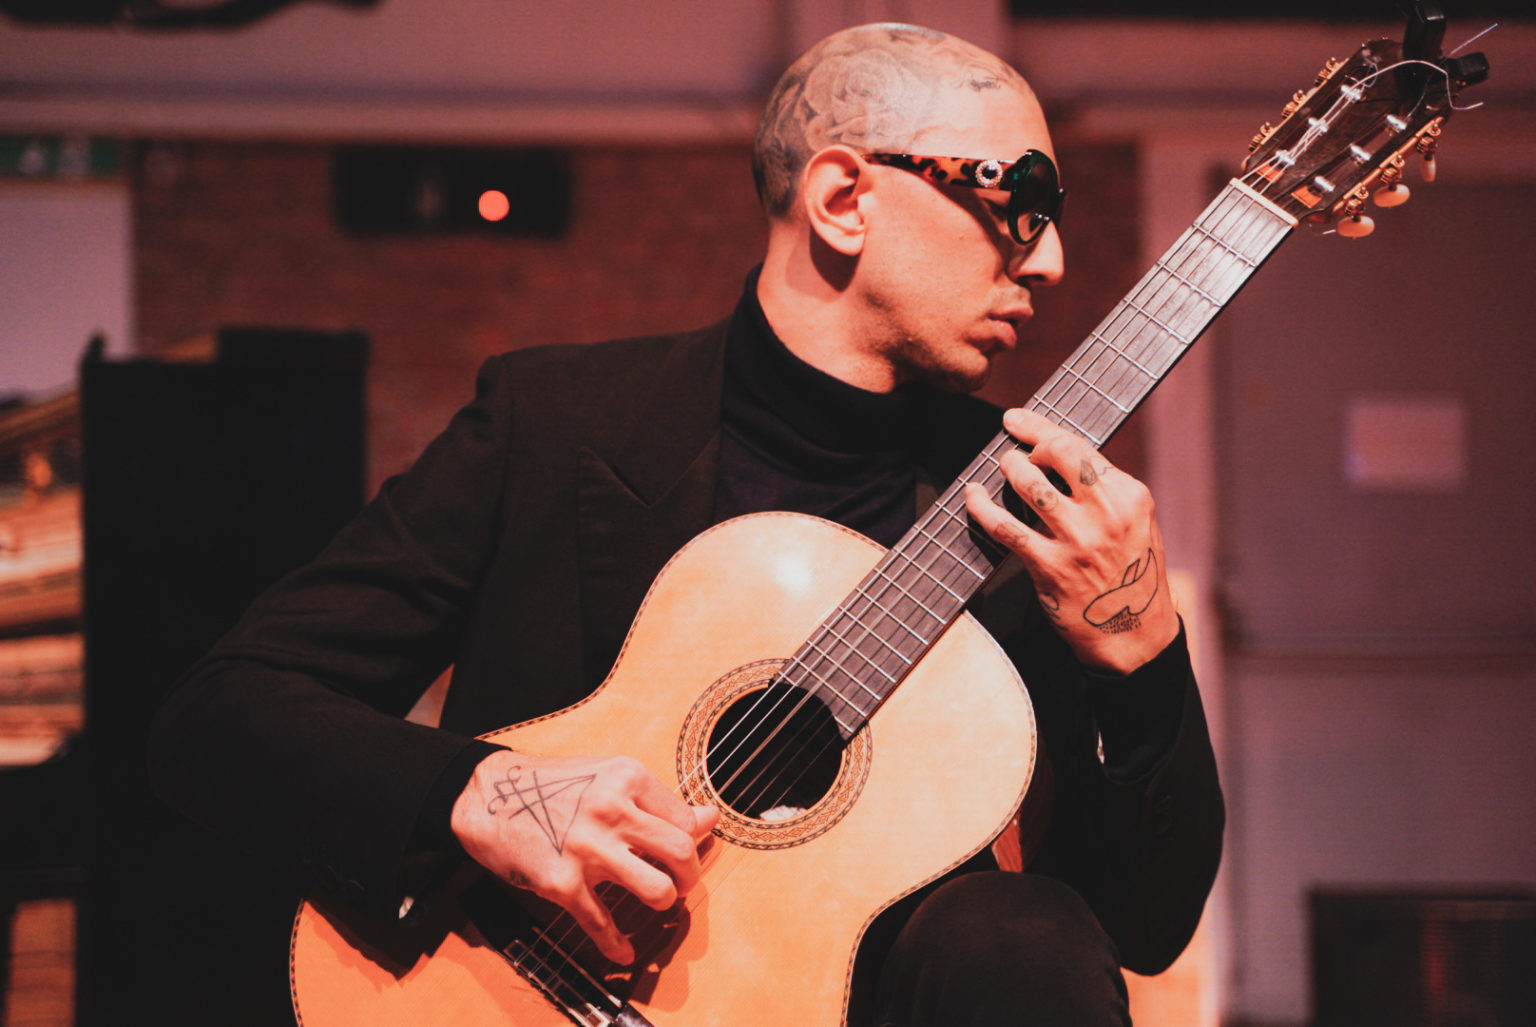 GIOVEDÌ 6 LUGLIO – il chitarrista Andrea Chiarini in concerto